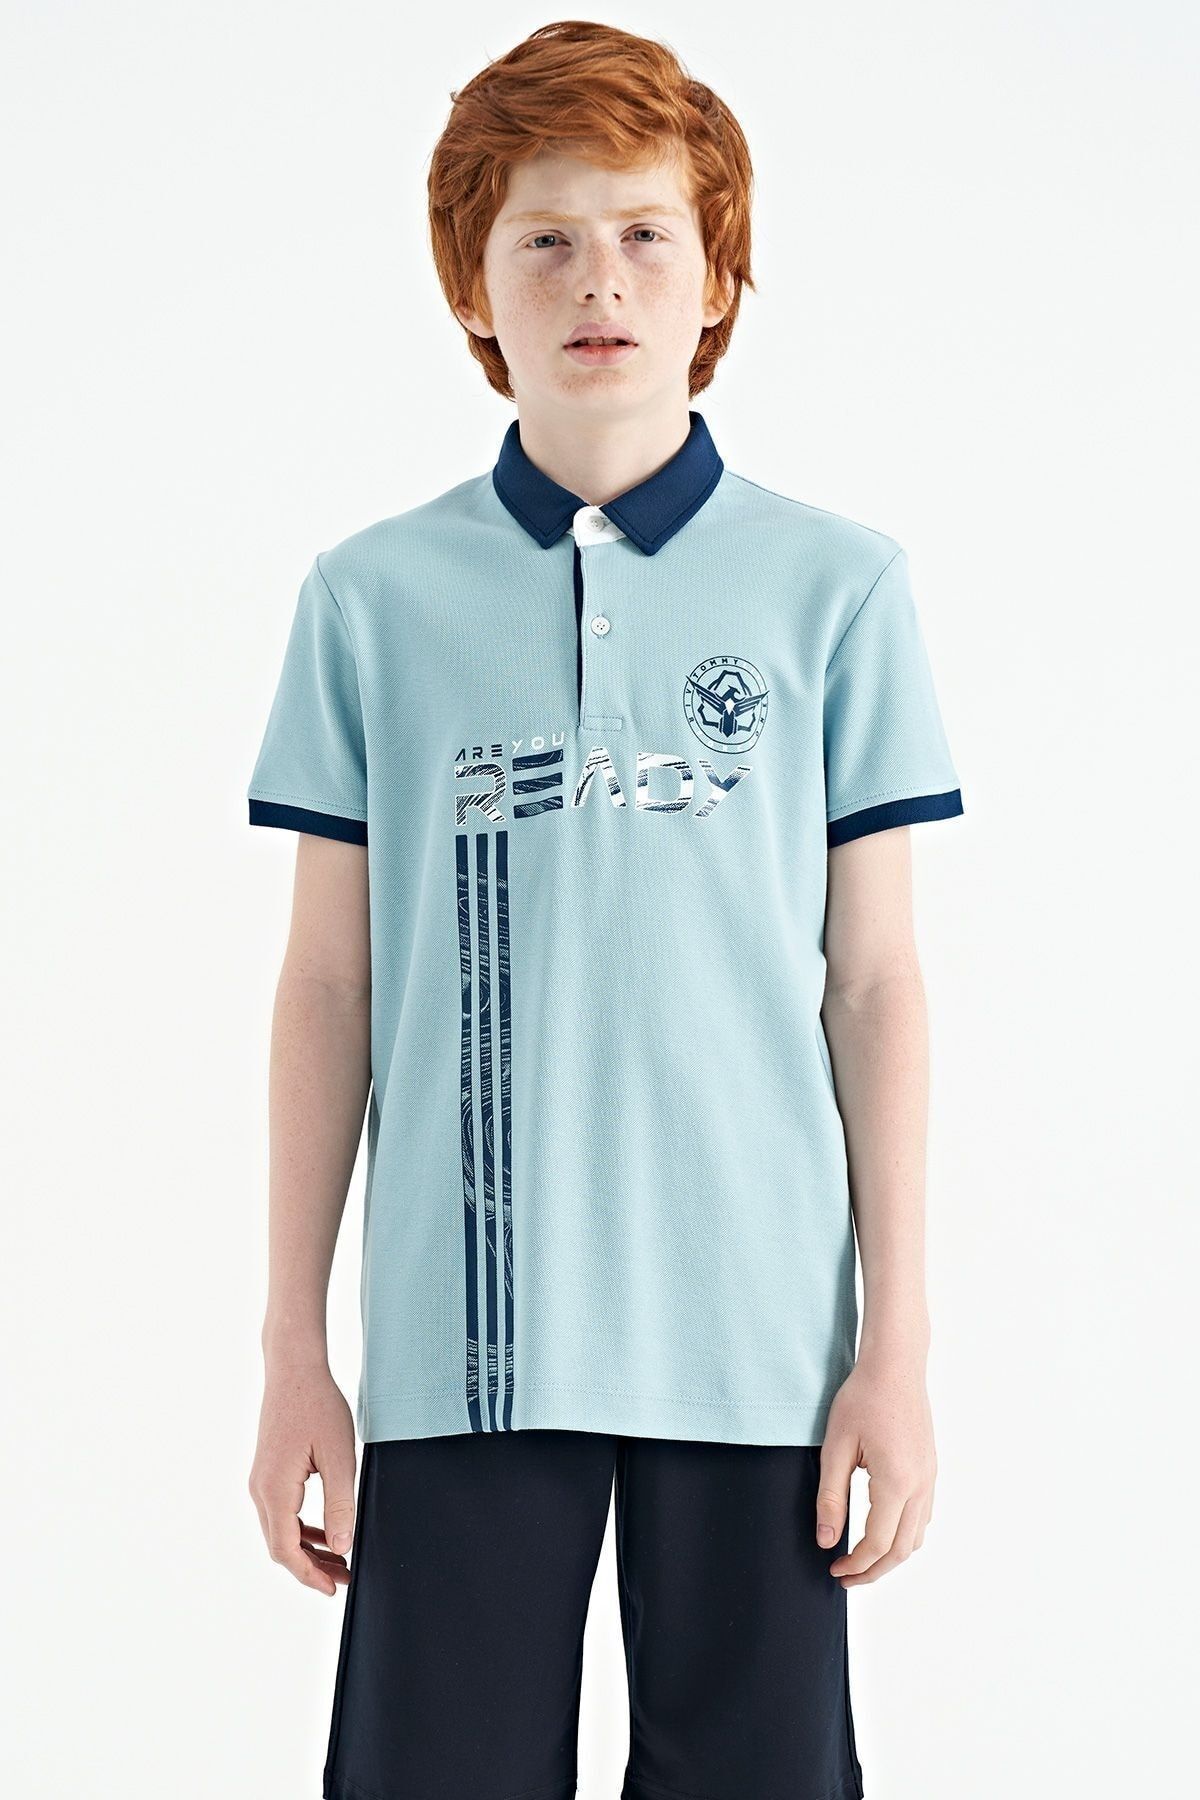 TOMMY LIFE Açık Mavi Yazı Baskı Desenli Standart Kalıp Polo Yaka Erkek Çocuk T-shirt - 11143